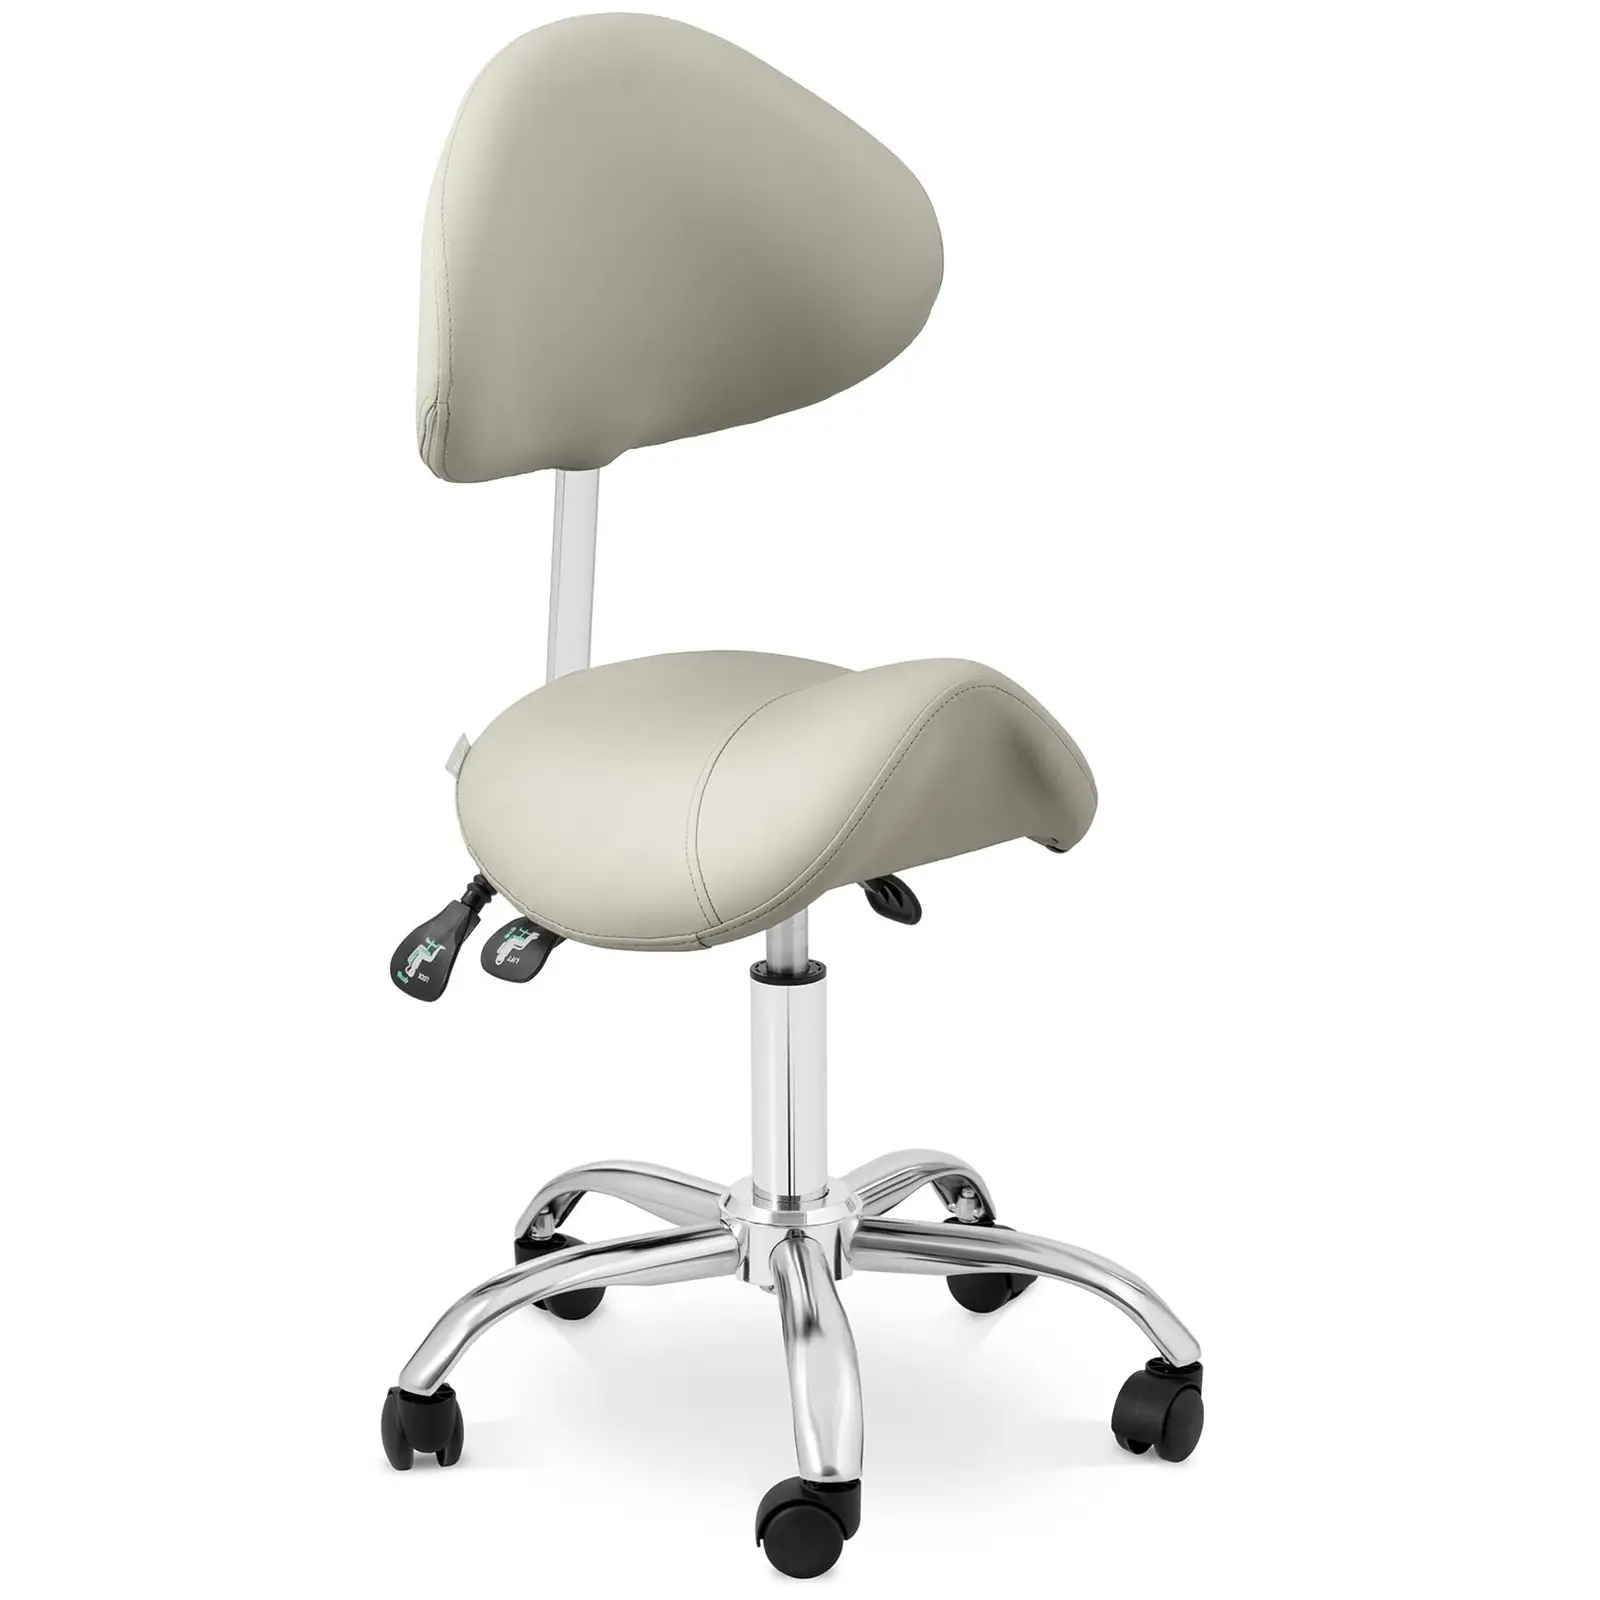 Scaun cu șa - spătar și înălțime scaun reglabile pe înălțime - 55 - 69 cm - 150 kg - Grey, Silver